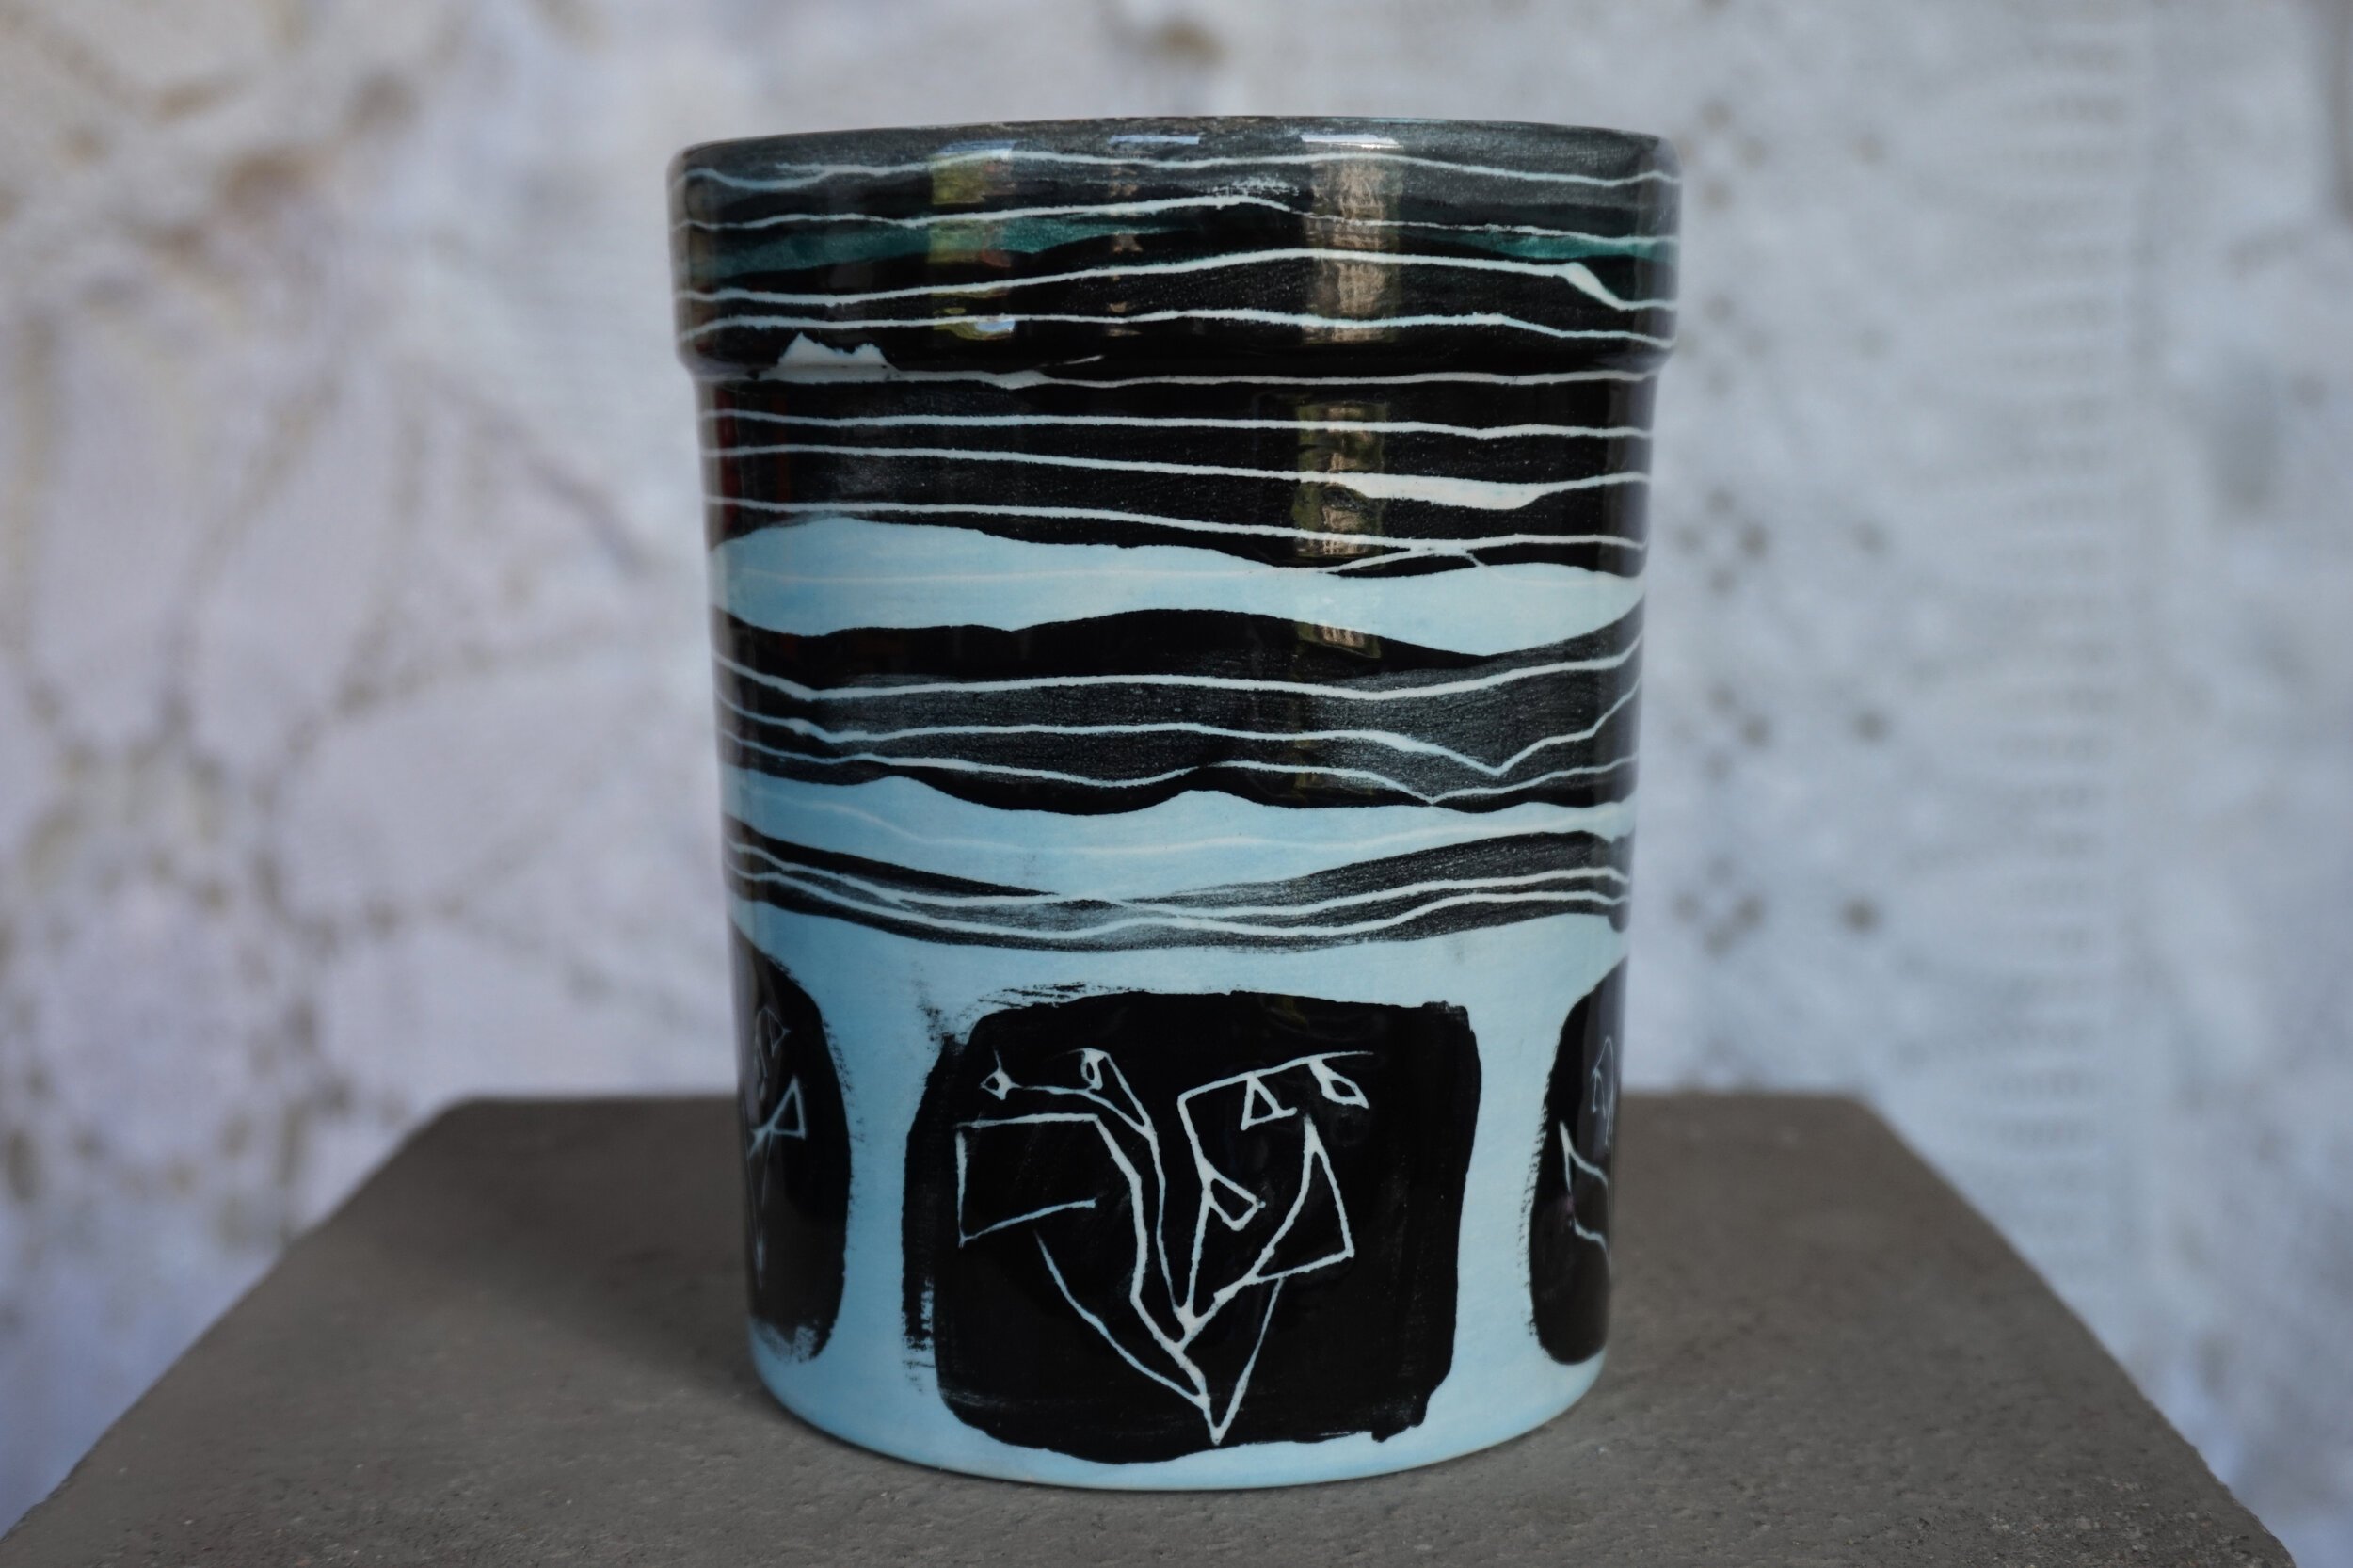   Vase, 2021   Porcelain  4 x 5 in 